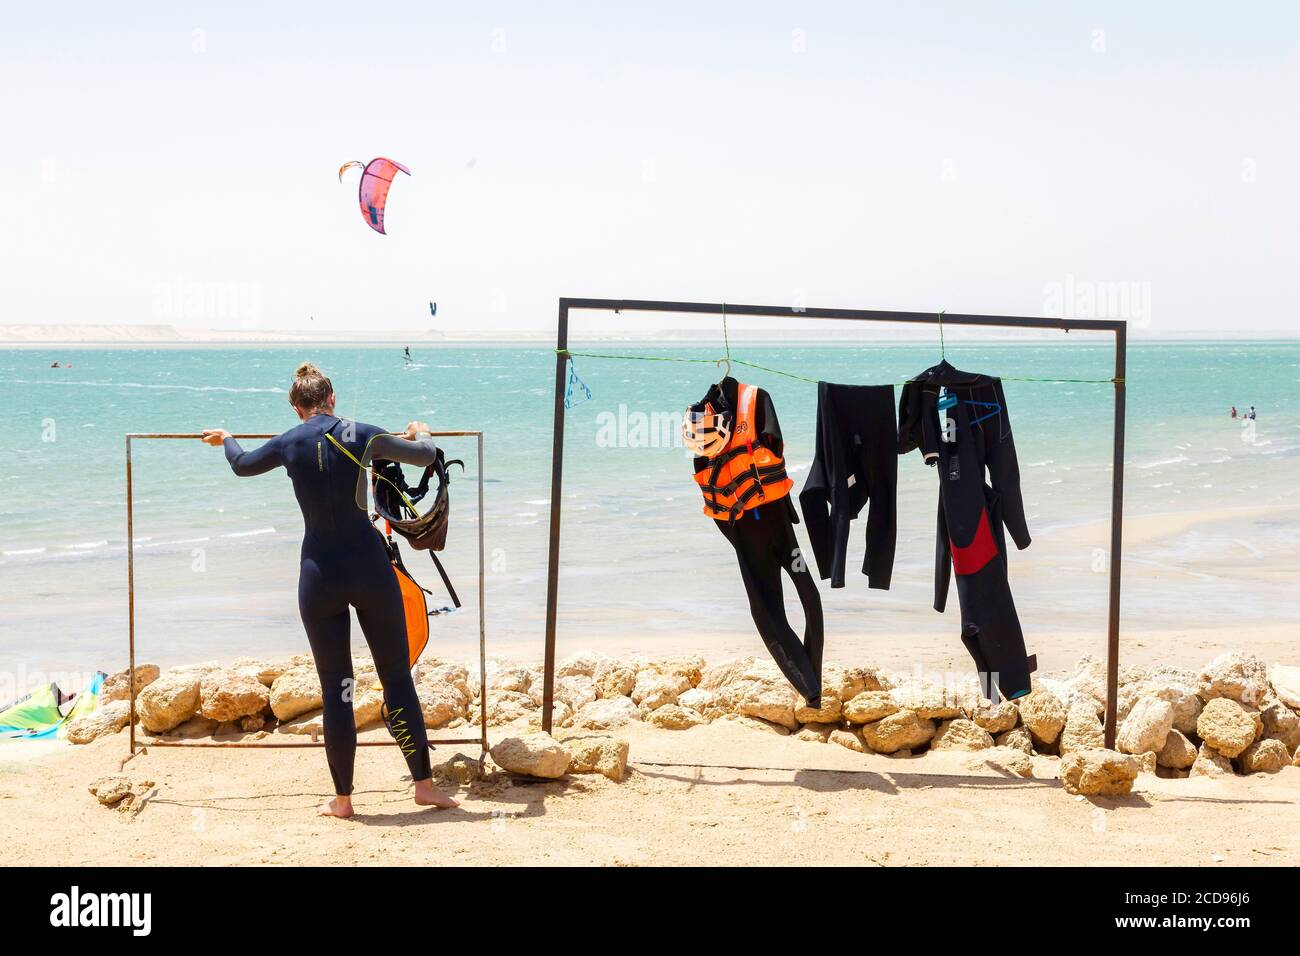 Marocco, Oued Ed-Dahab, Dakhla, PK25 Resort, jeune femme sur une plage après une séance de kite-surf Banque D'Images